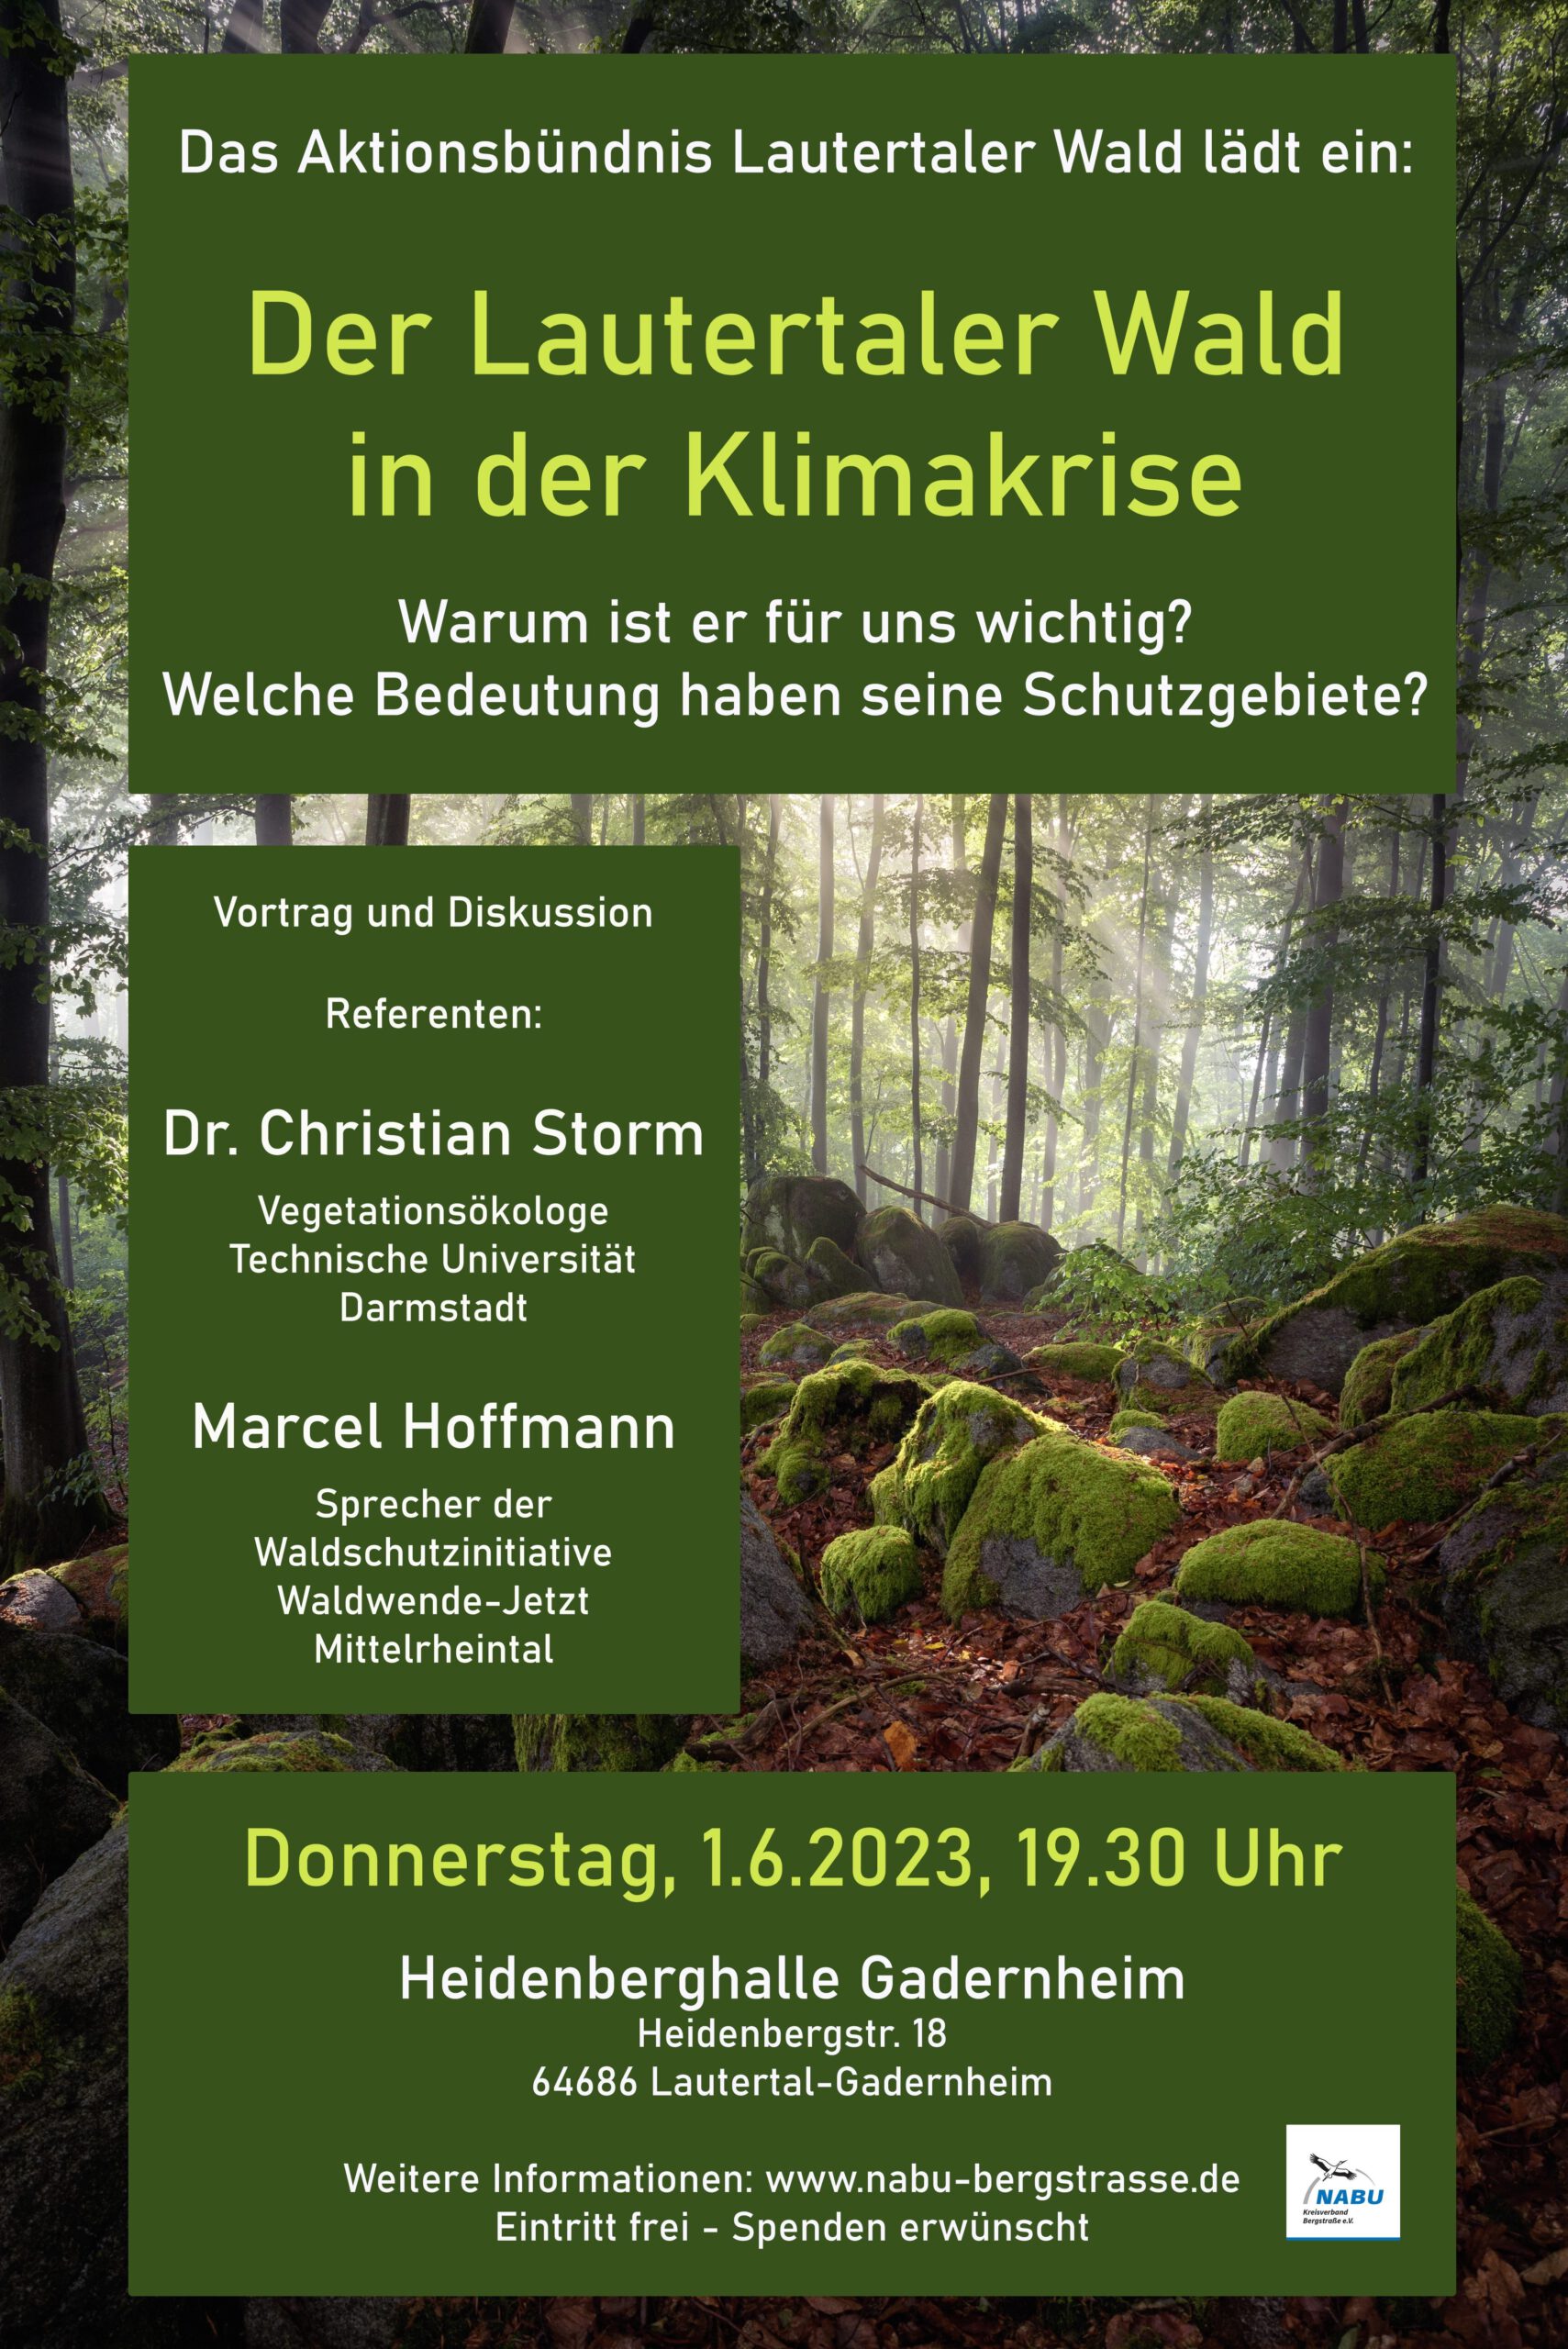 Einladung zu Vortrag und Diskussion 2023 vom Aktionsbündnis Lautertaler Wald